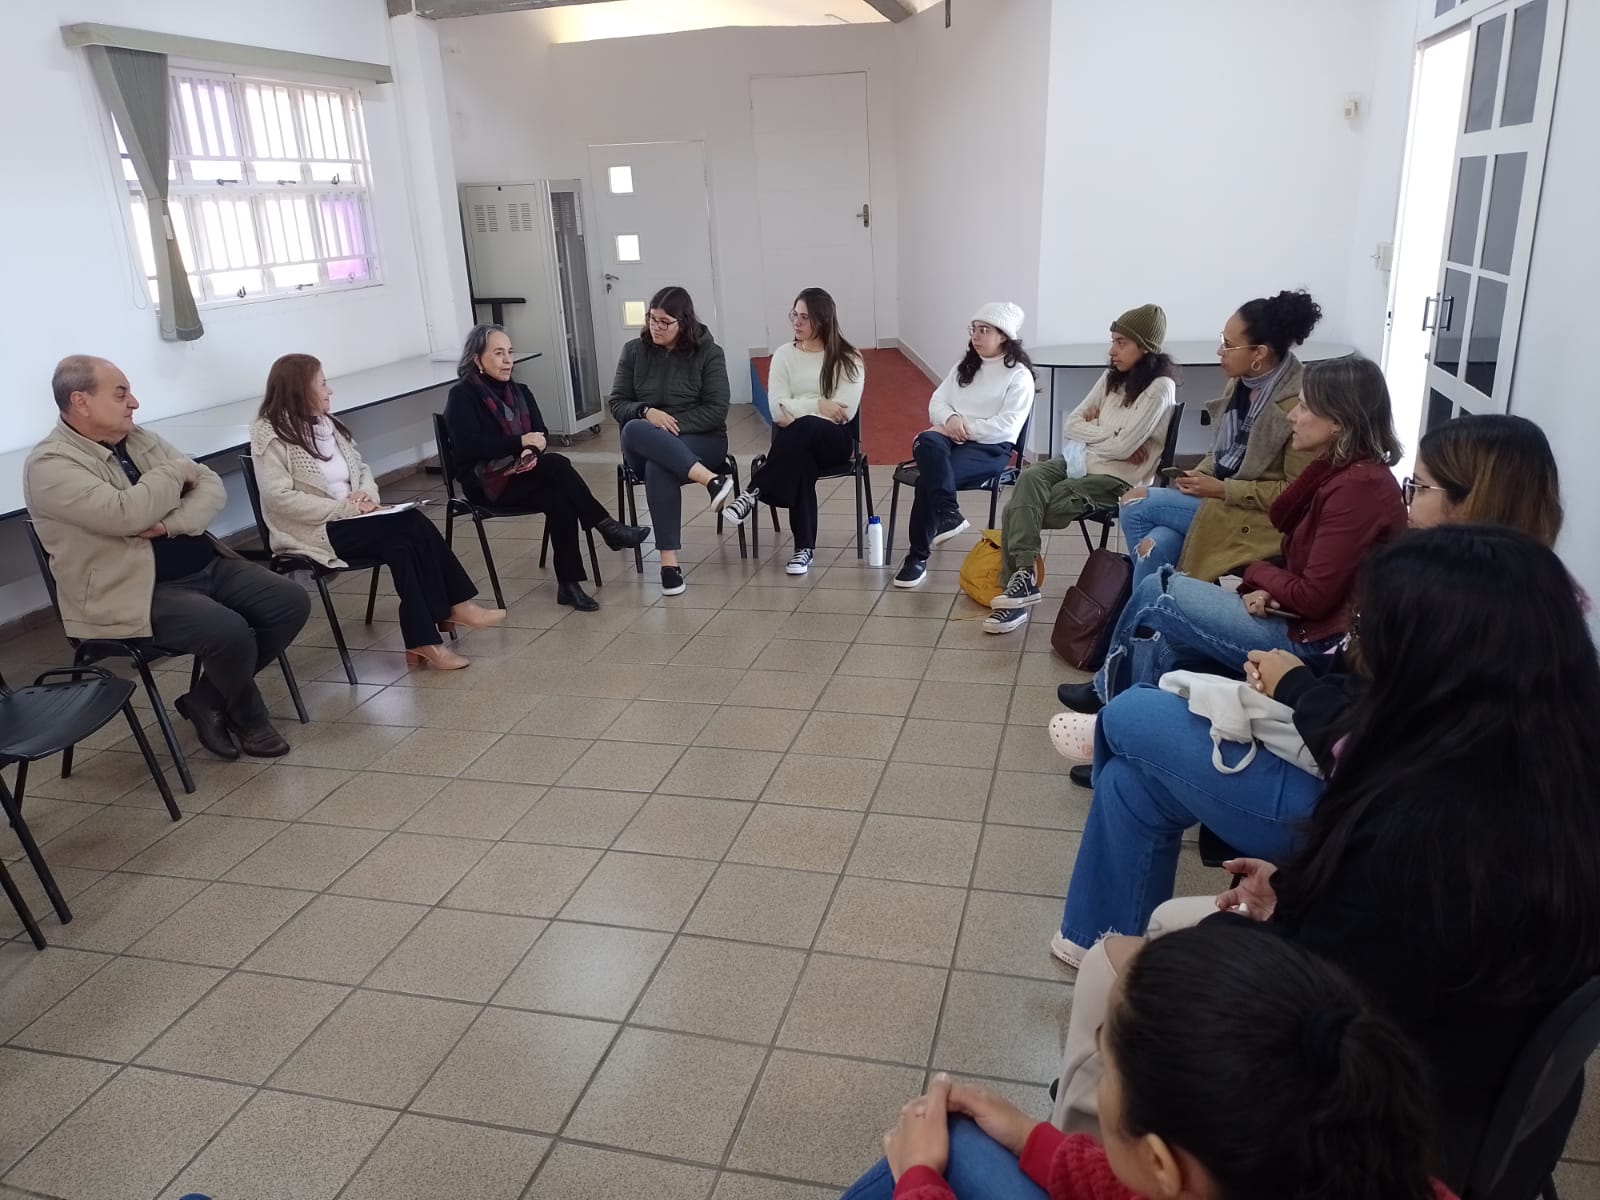 Sinpro Campinas recebe estudantes de Pedagogia para roda de conversas